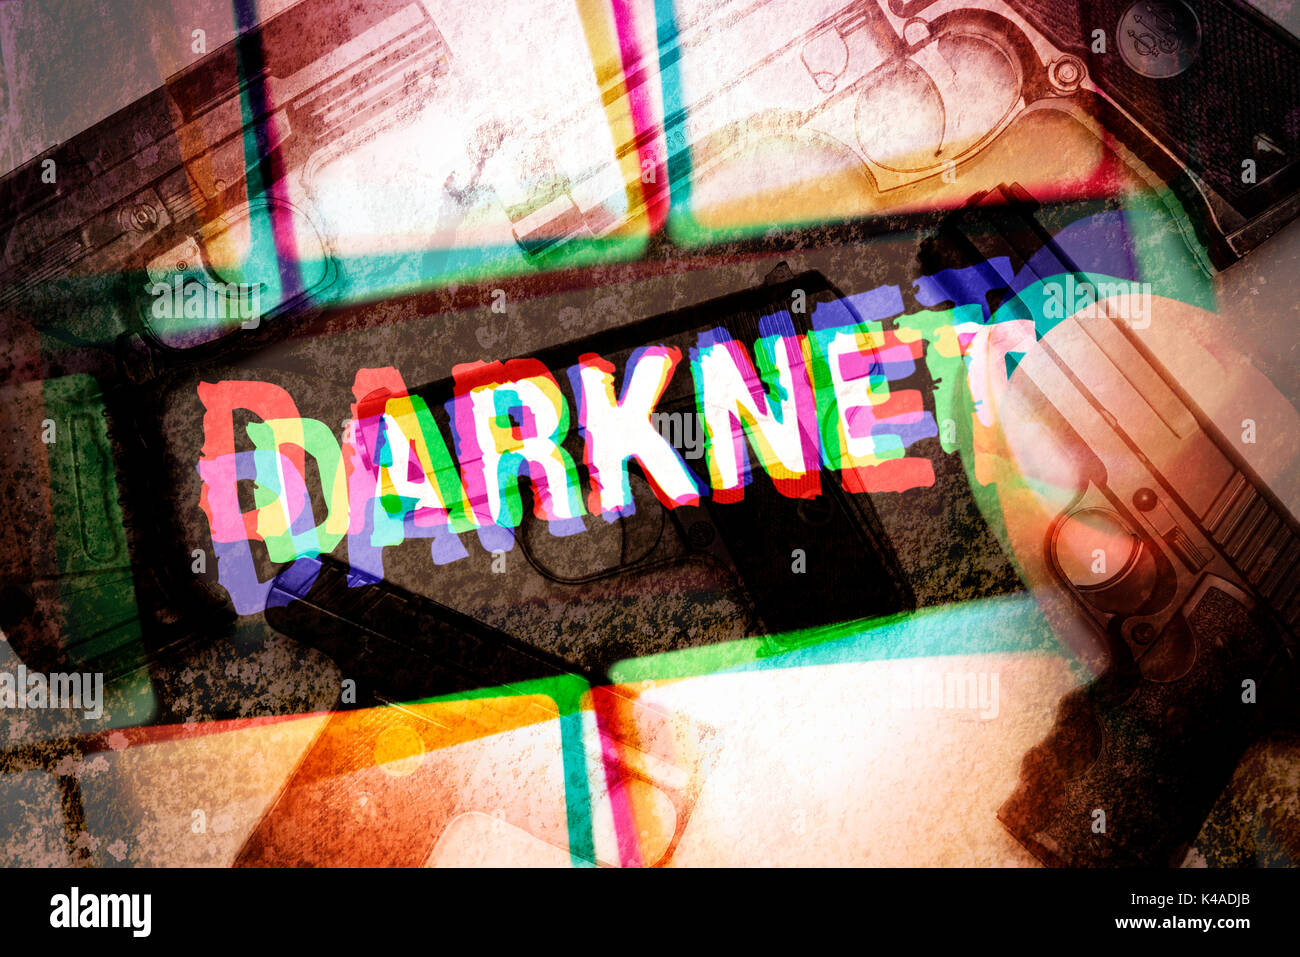 Drugs on darknet